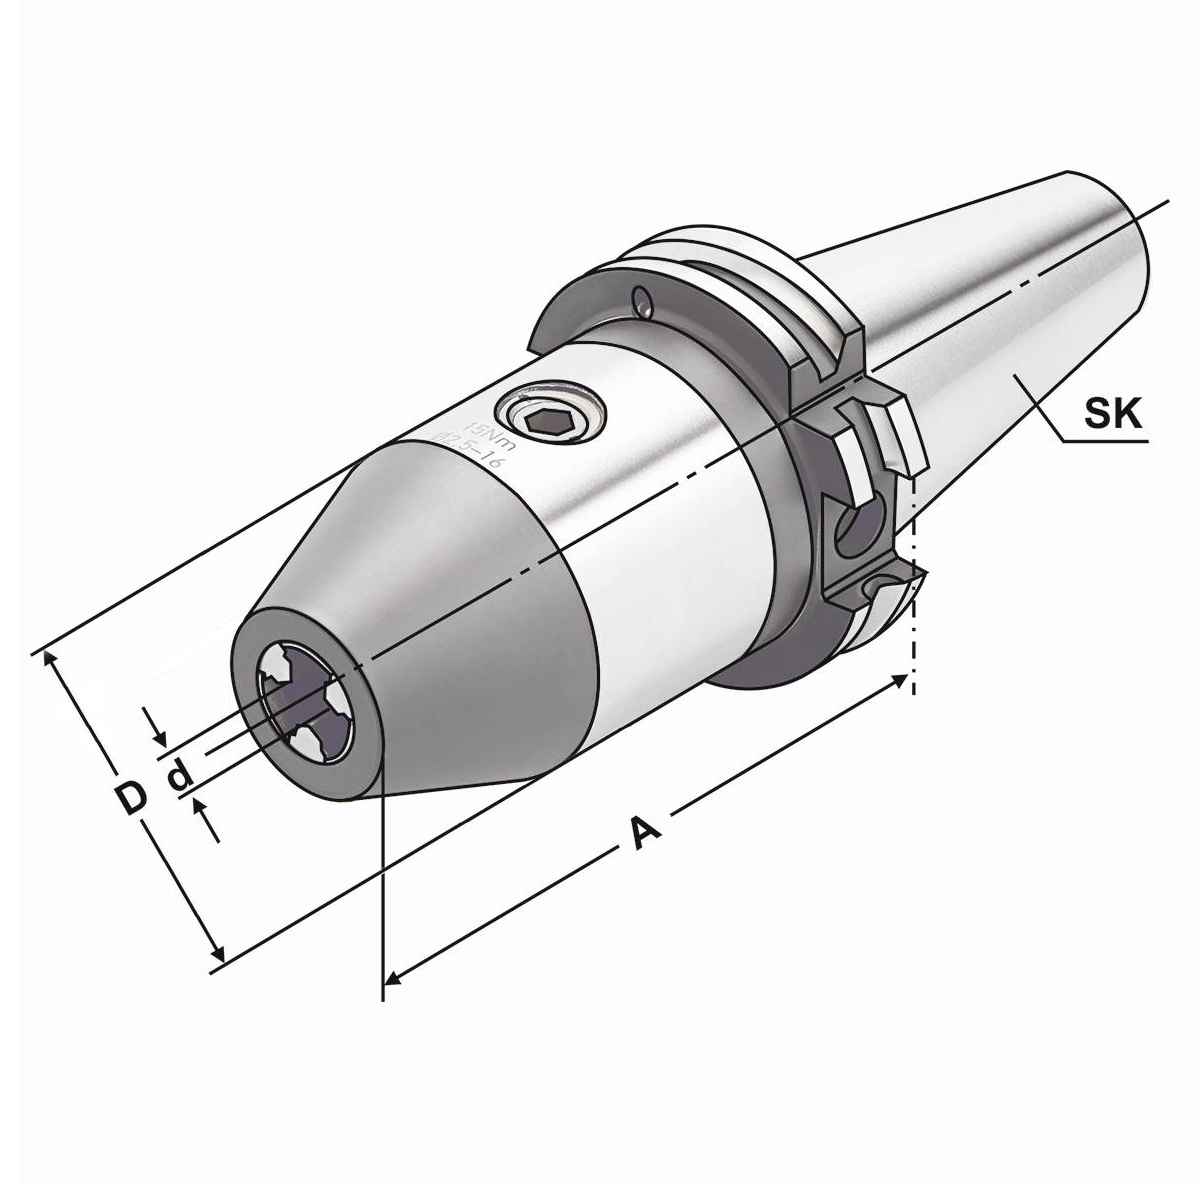 CNC-Bohrfutter SK 50-1/13-90 DIN 69871 AD